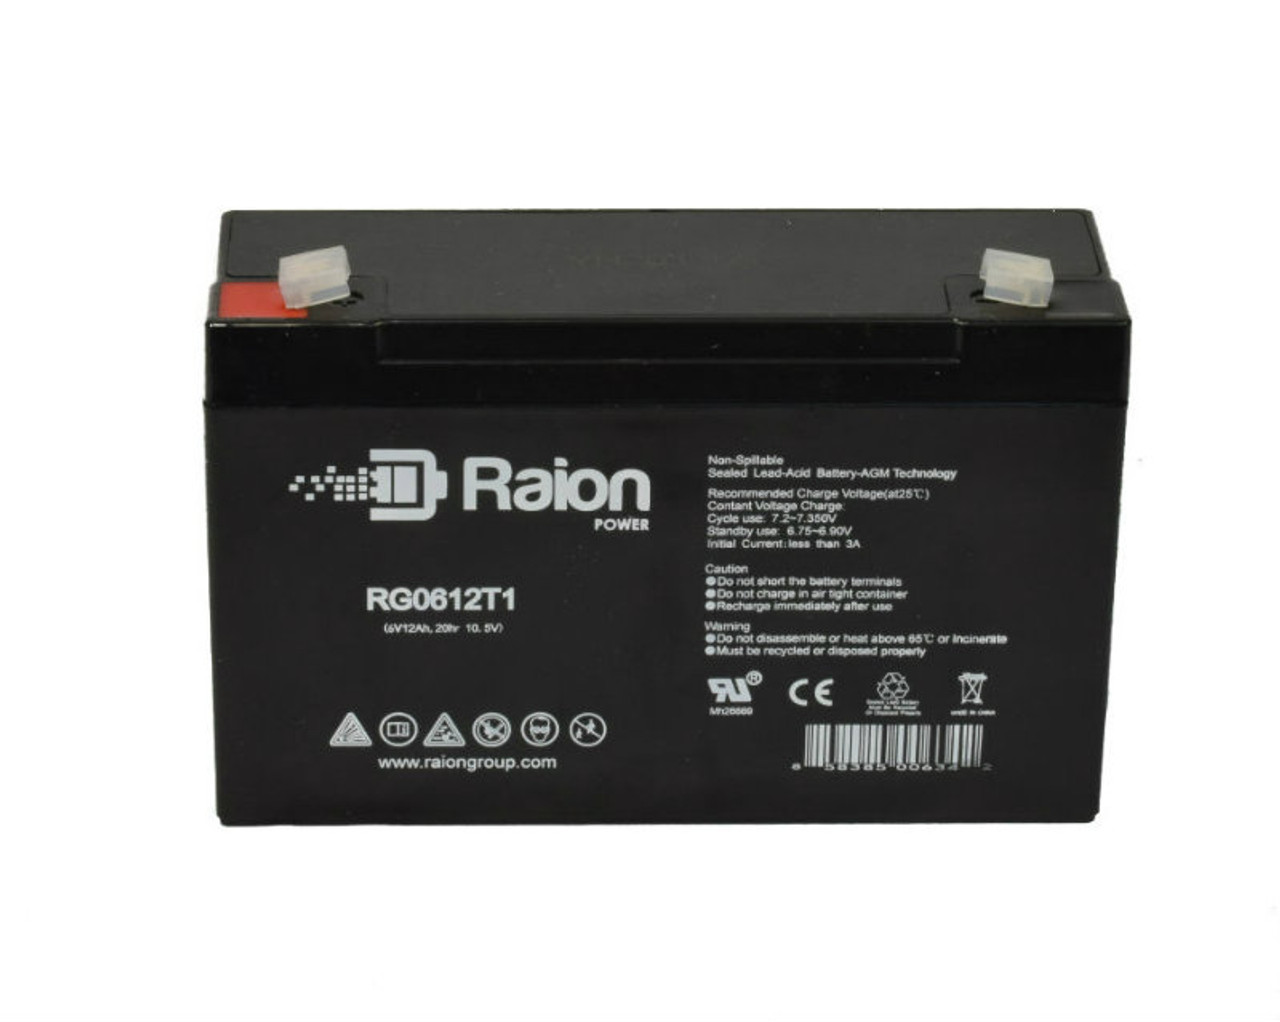 Raion Power RG06120T1 SLA Battery for Light Alarms 2S12E3